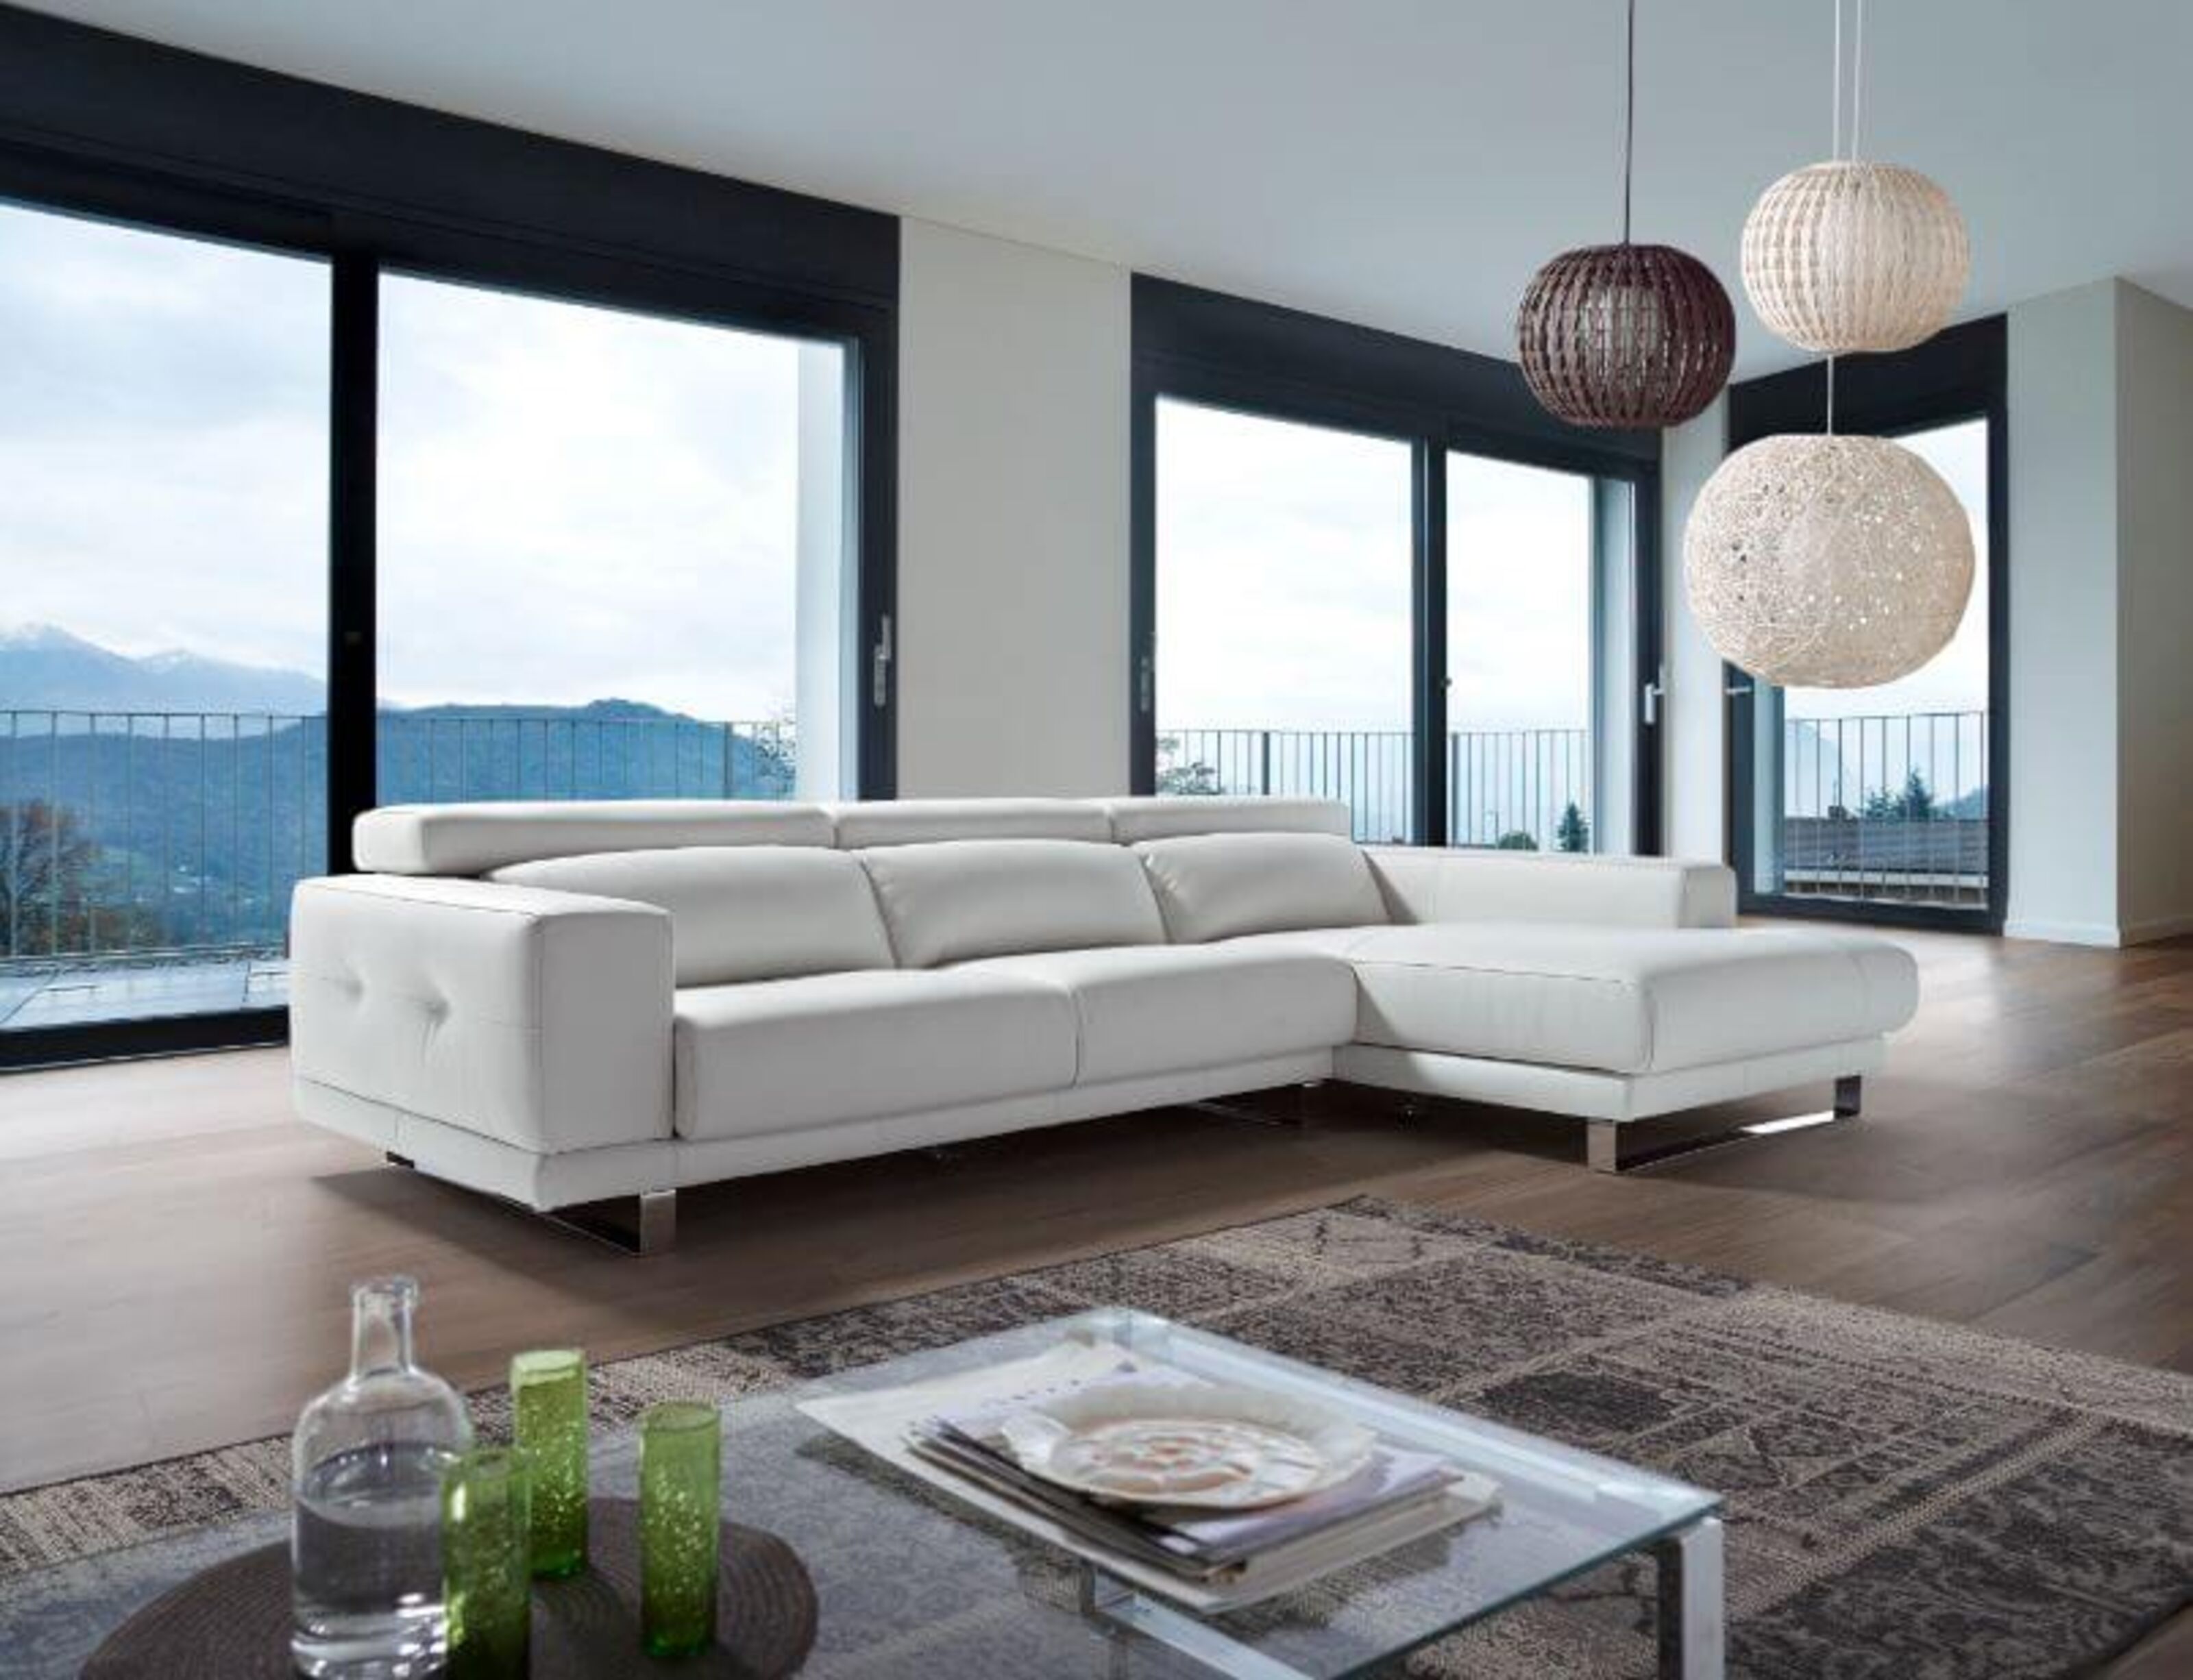 Ambar Italian Leather Corner Group Sofa, White Leather L Shape Sofa